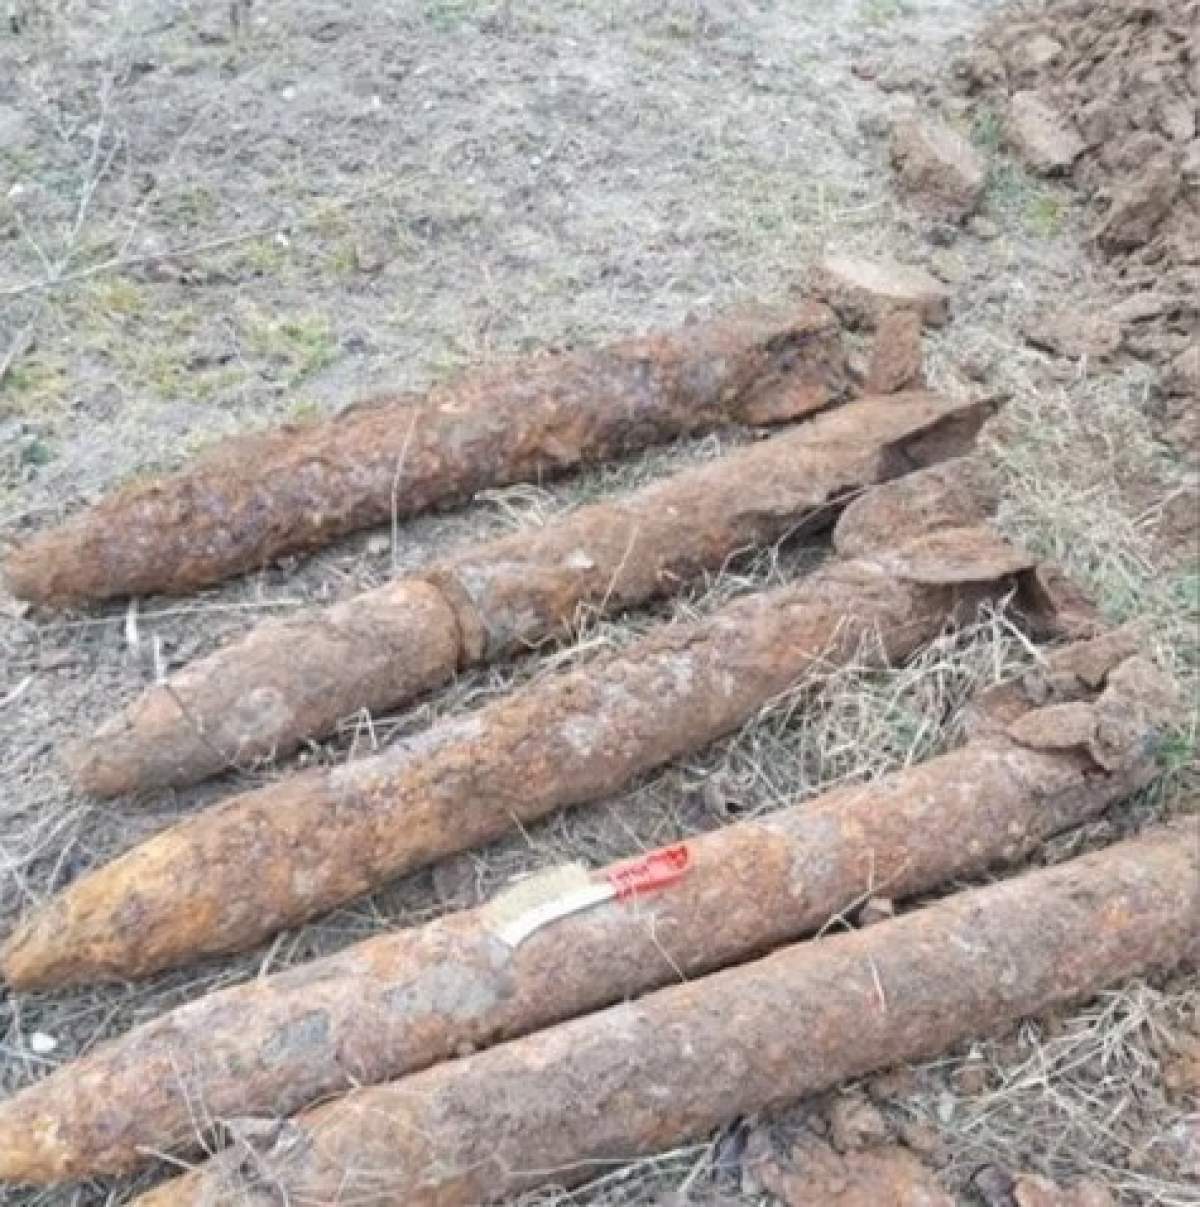 Bombe de război, găsite într-un sat din Iași. Locuitorii au fost evacuați din propriile case